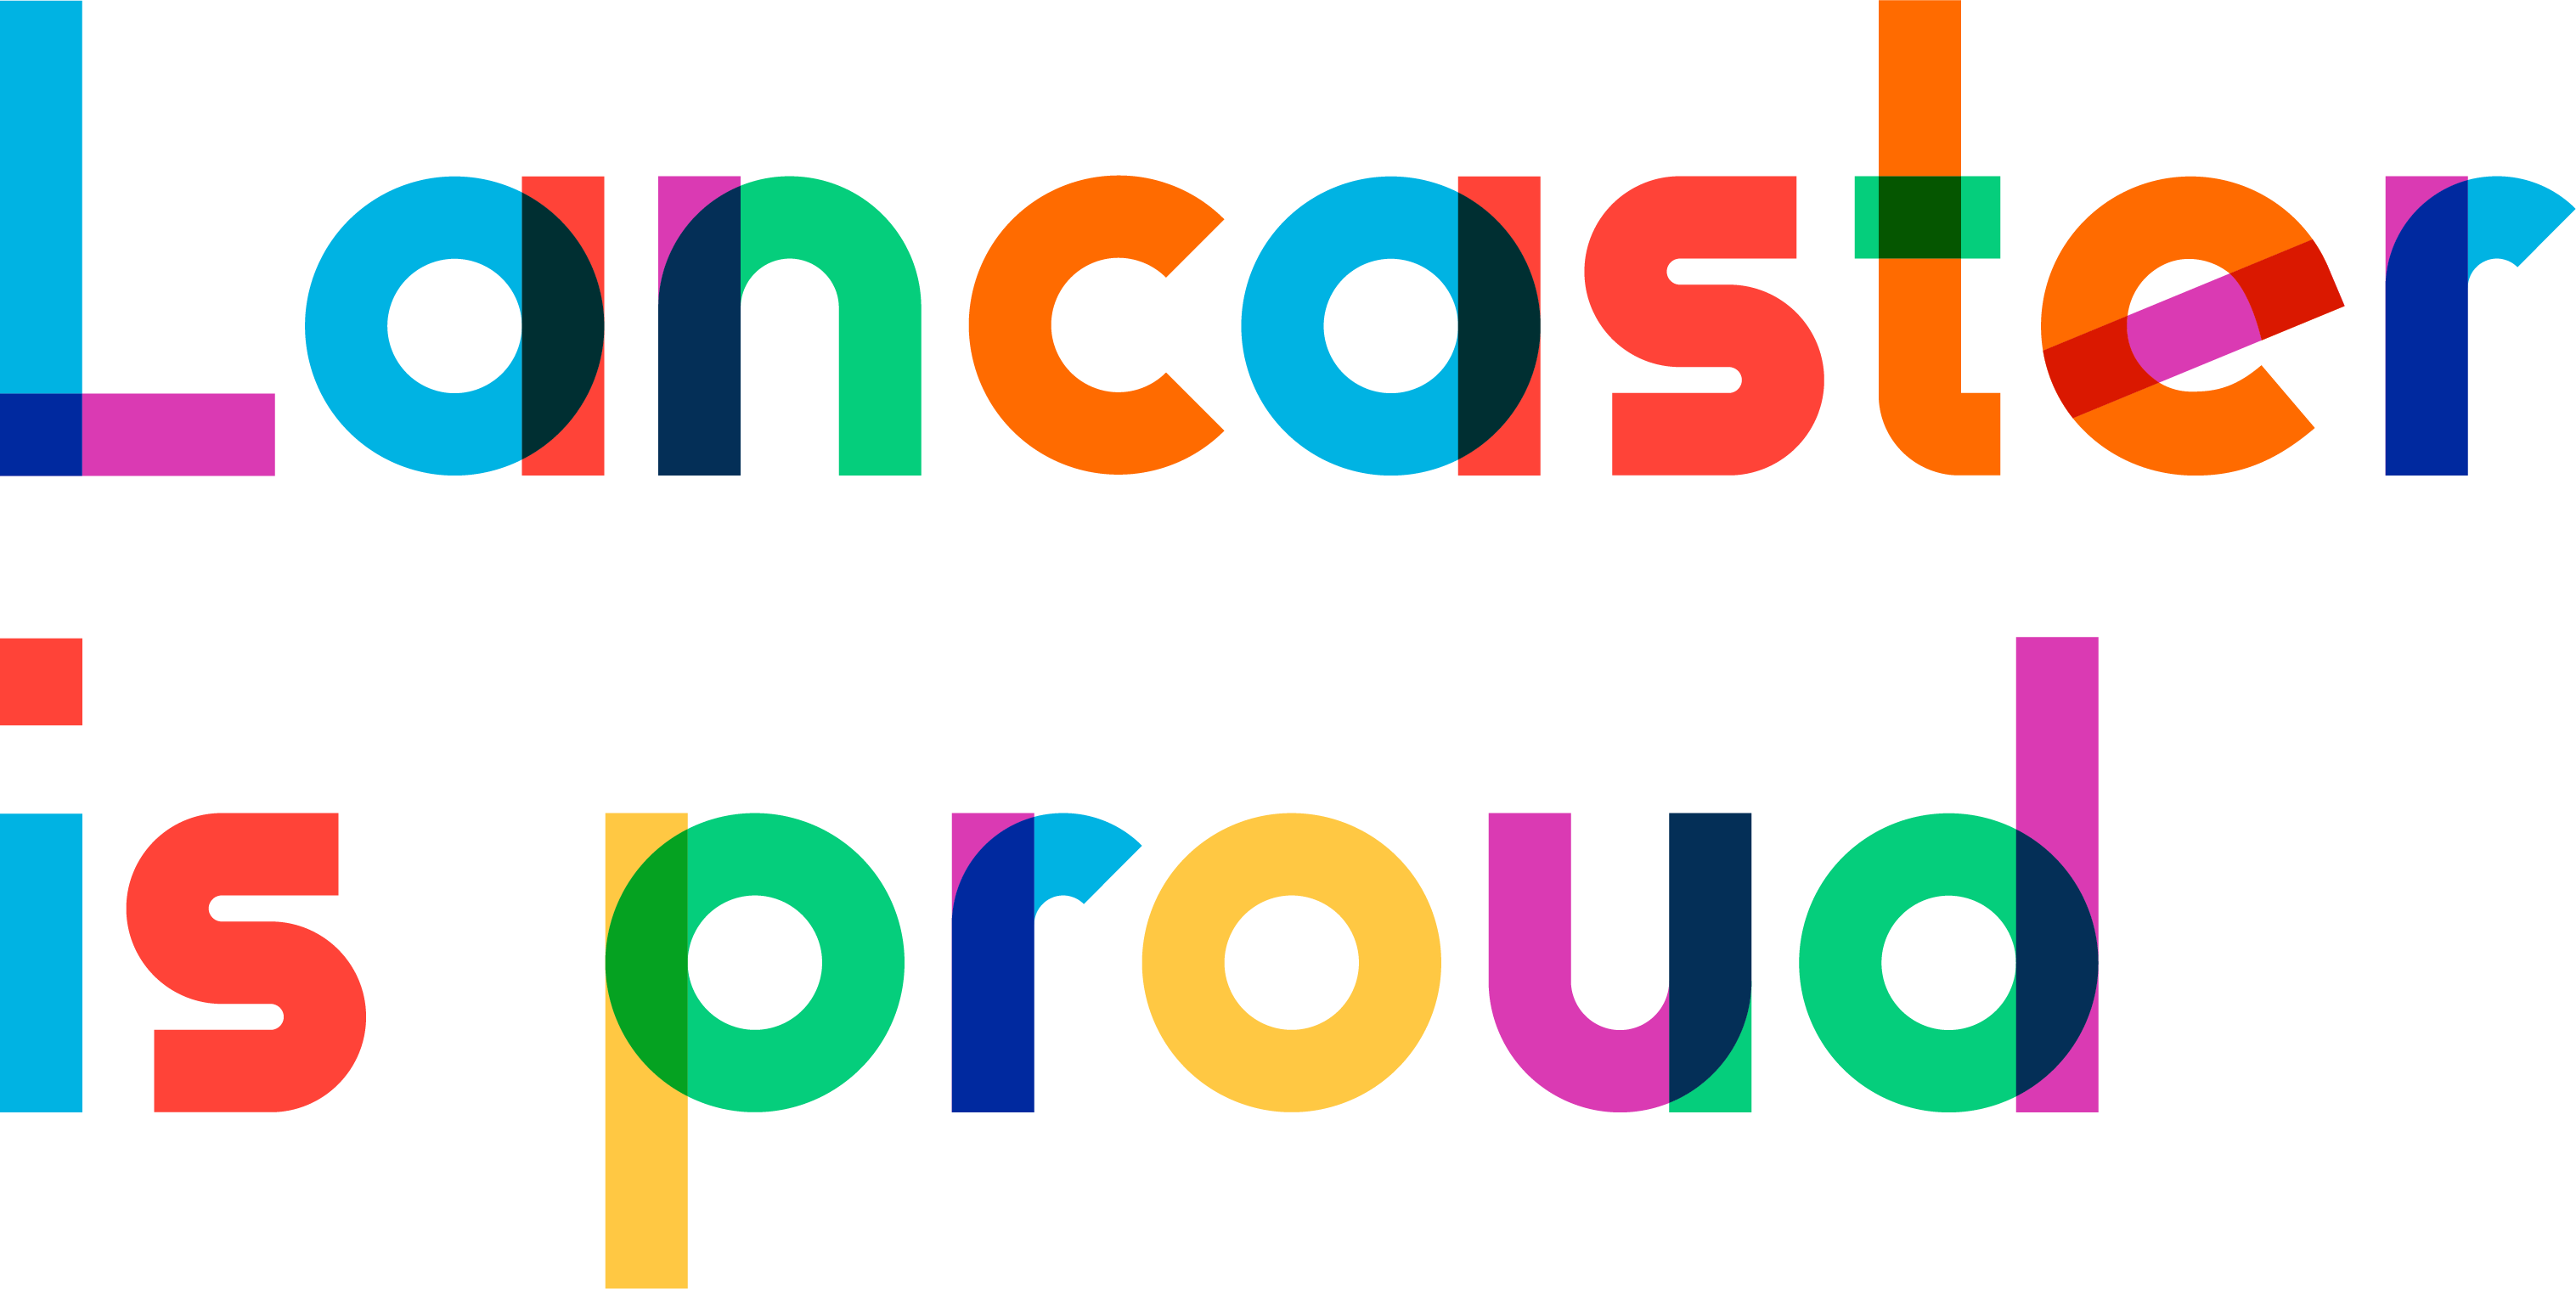 Lancaster is proud